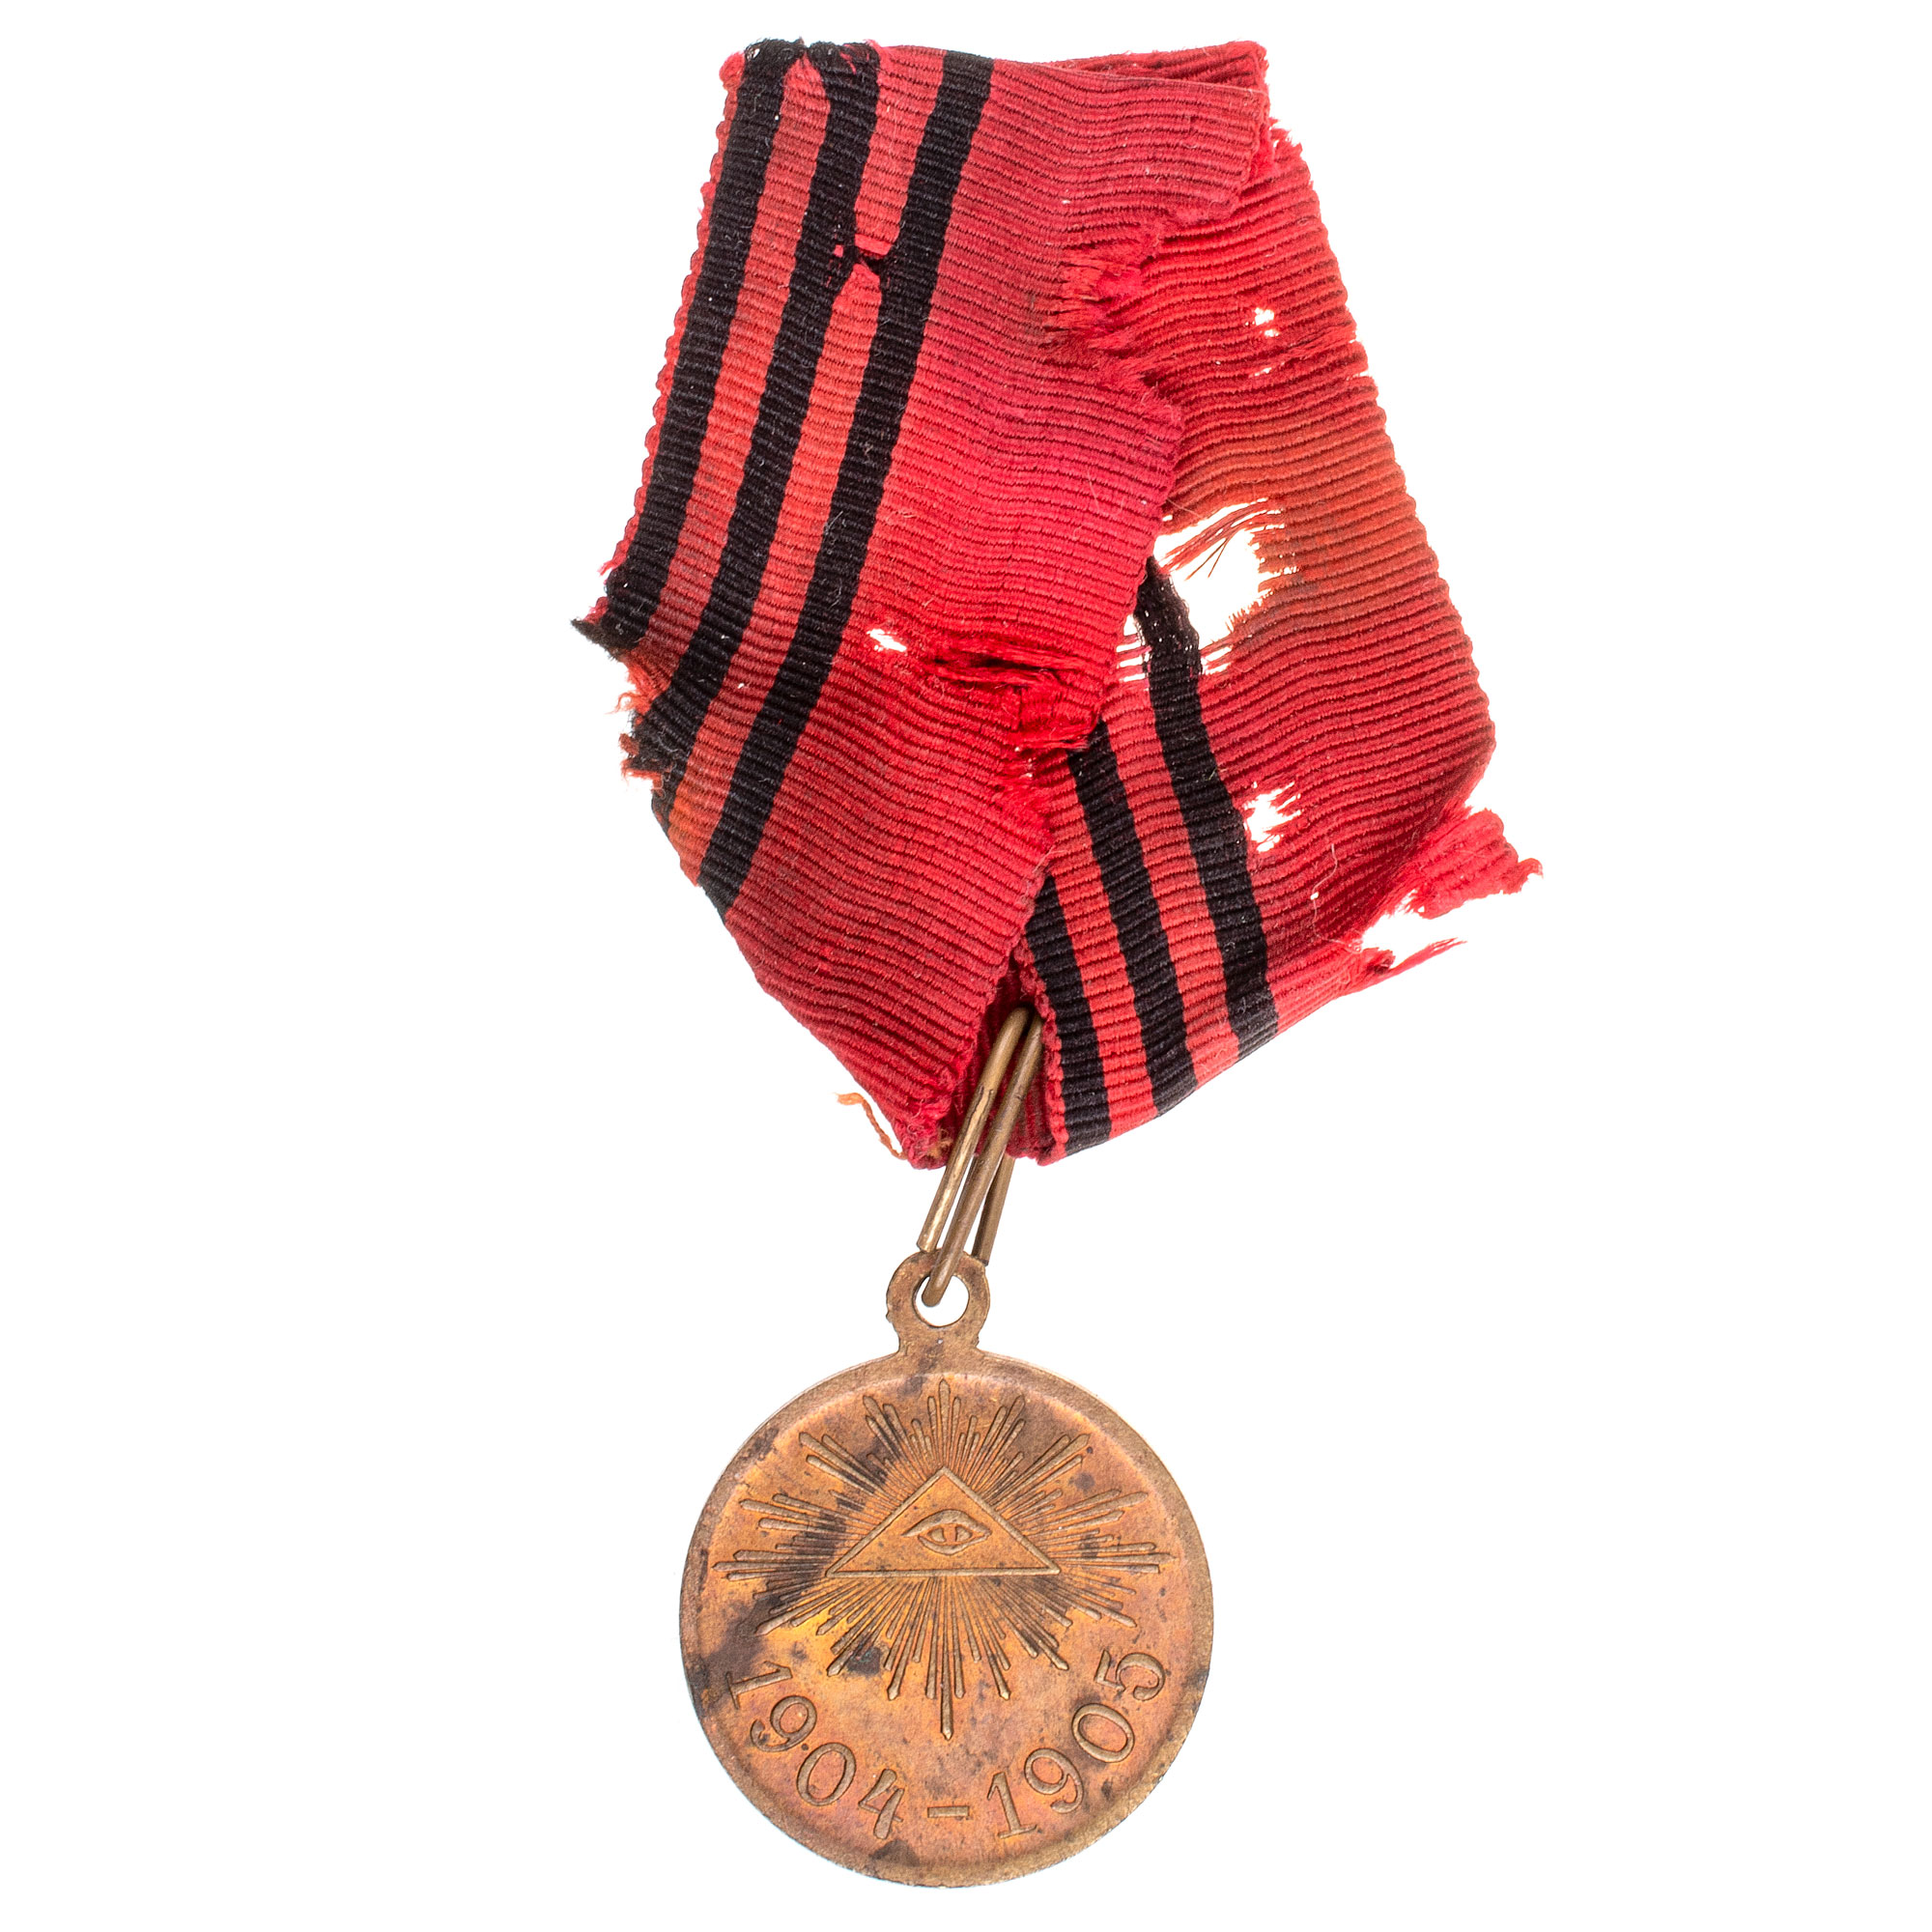 Медаль "В память Русско.-.Японской войны 1904 - 1905 гг" на совмещённой ленте орденов Св. Георгия и Св. Александра Невского.